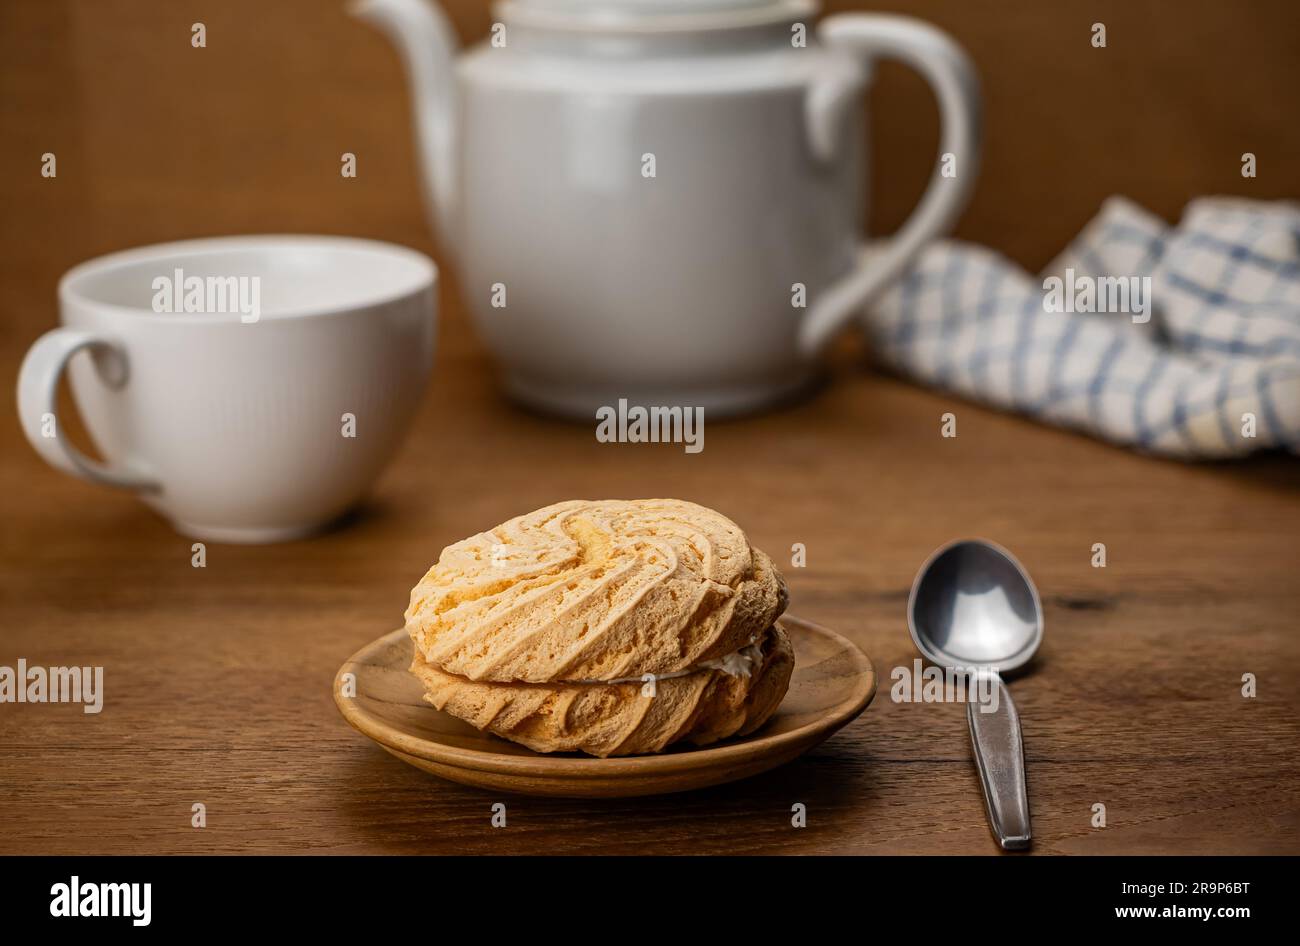 Szene der Teezeit mit einem kleinen, hausgemachten runden Kuchen gefüllt mit Blaubeercreme in einem Holzgericht mit einer weißen Keramiktasse Tee und Metalllöffel Stockfoto